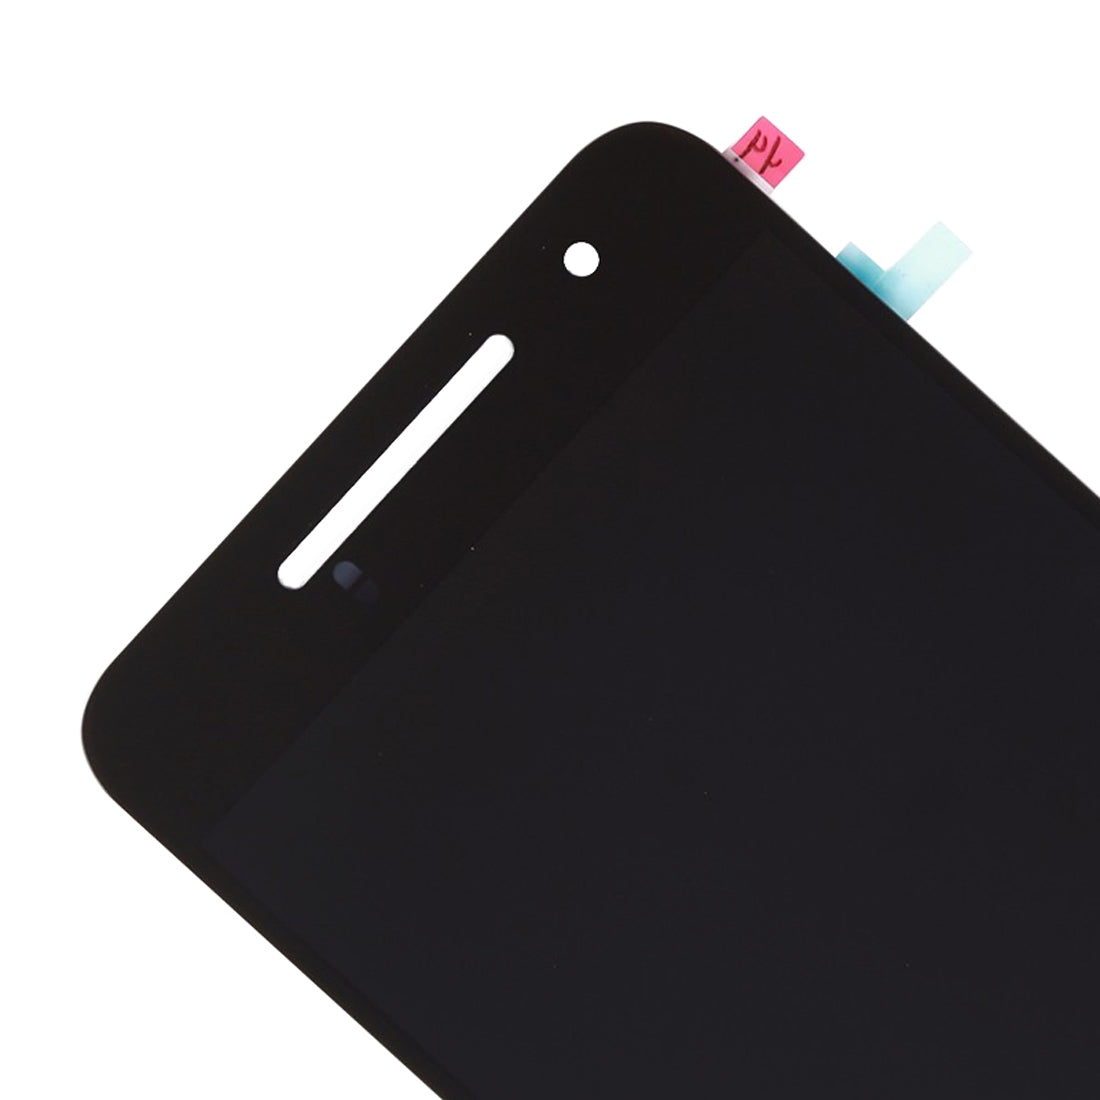 Ecran LCD + Numériseur Tactile Google Nexus 6P Noir